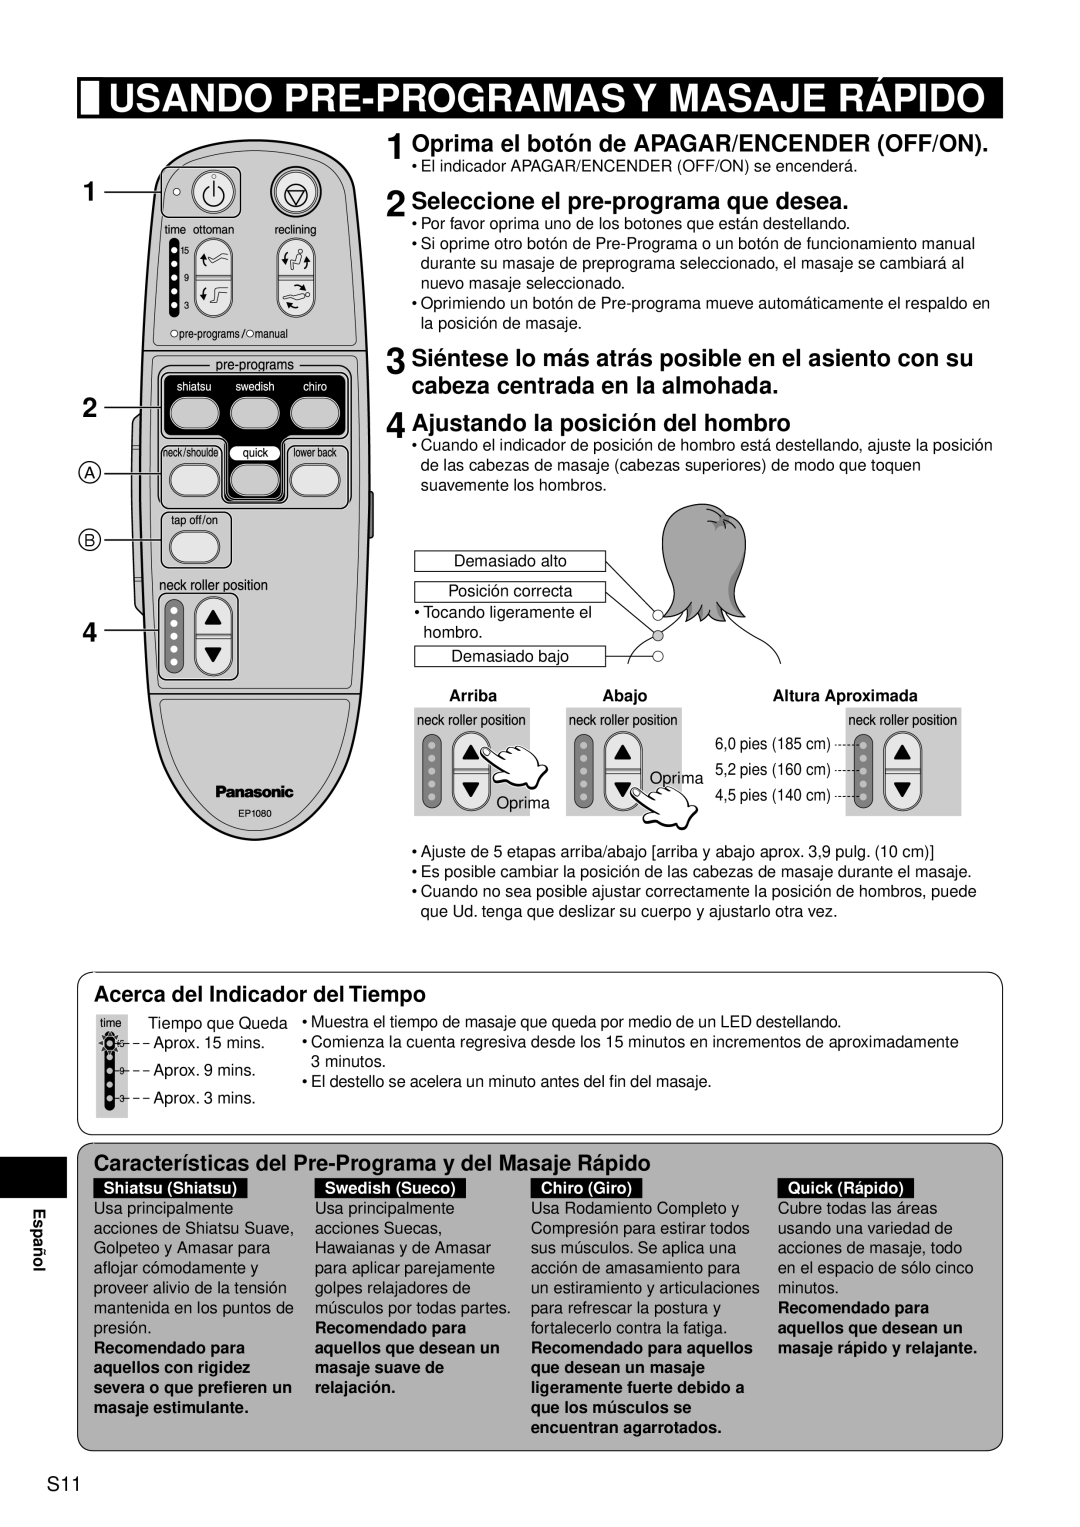 Panasonic EP1080 manual Usando Pre-Programasy Masaje Rápido, Oprima el botón de APAGAR/ENCENDER OFF/ON, Shiatsu Shiatsu 